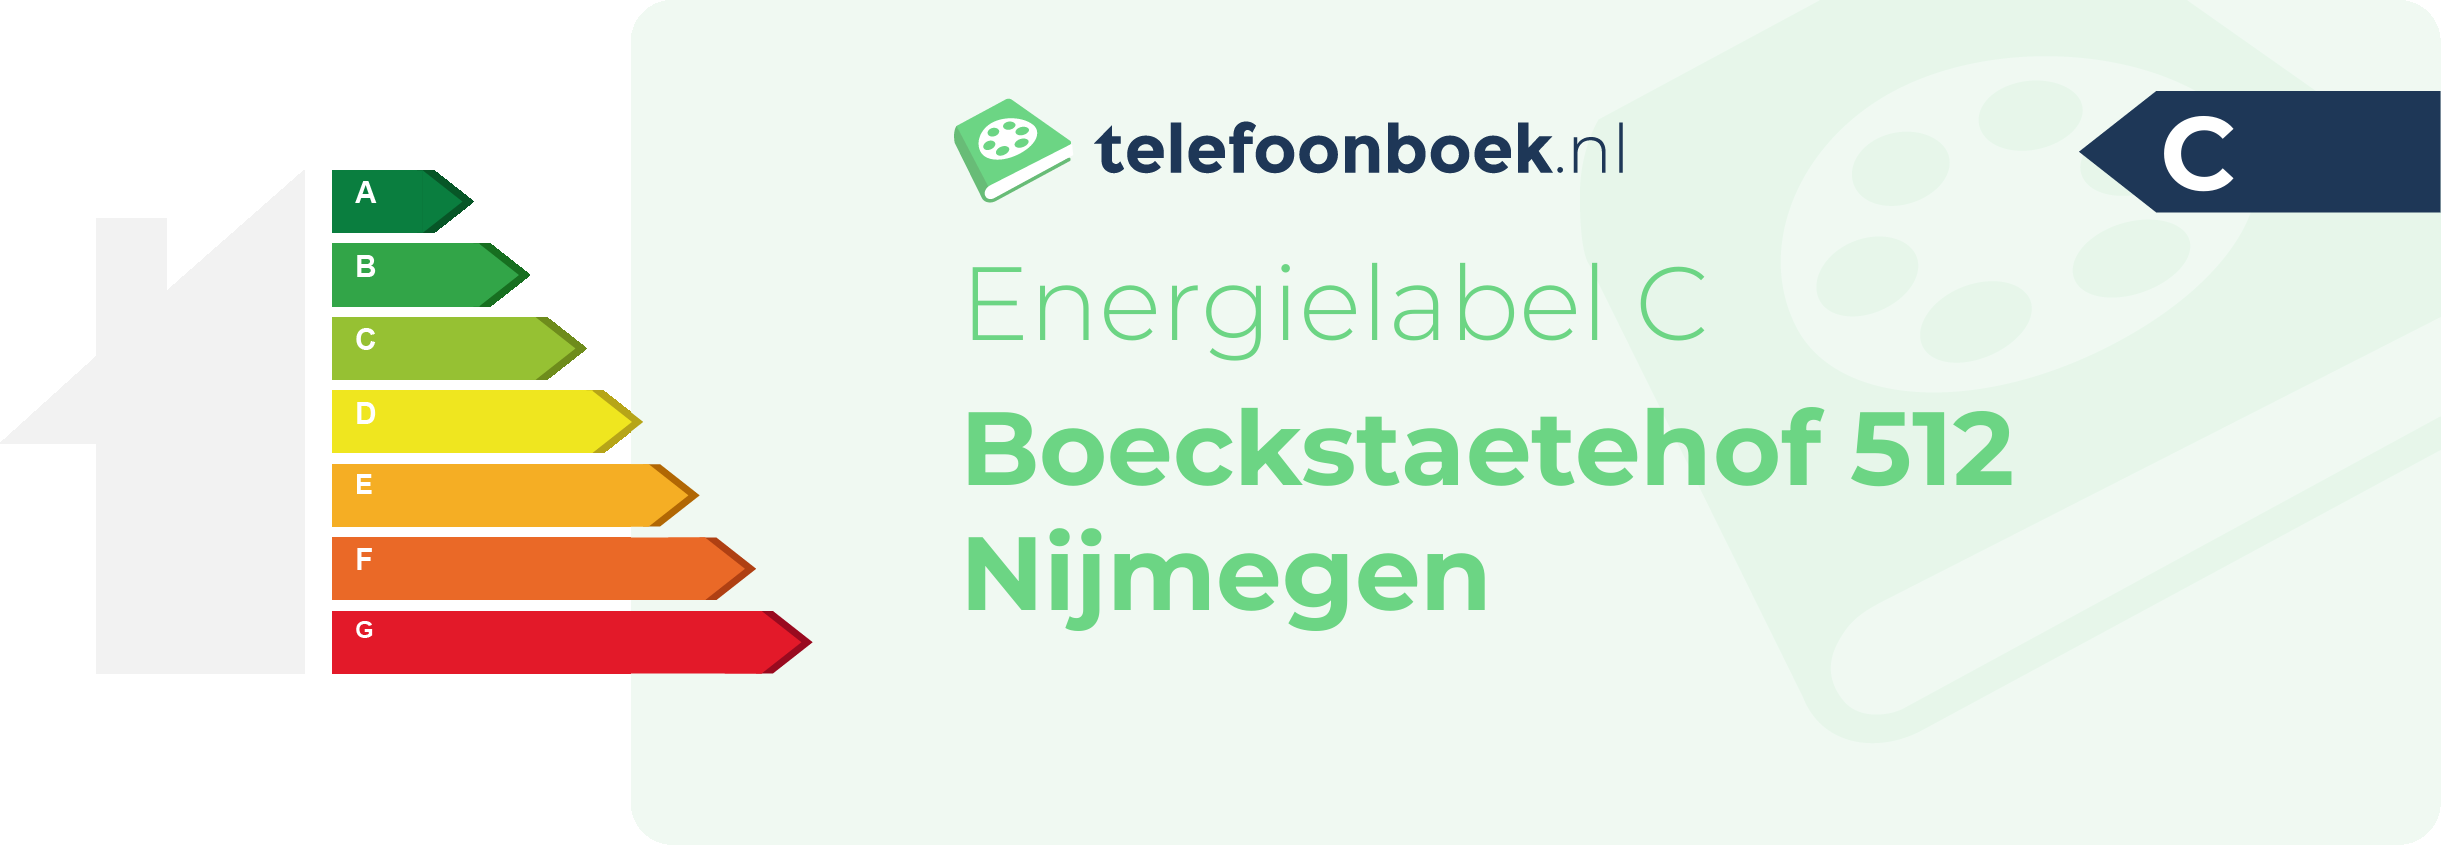 Energielabel Boeckstaetehof 512 Nijmegen